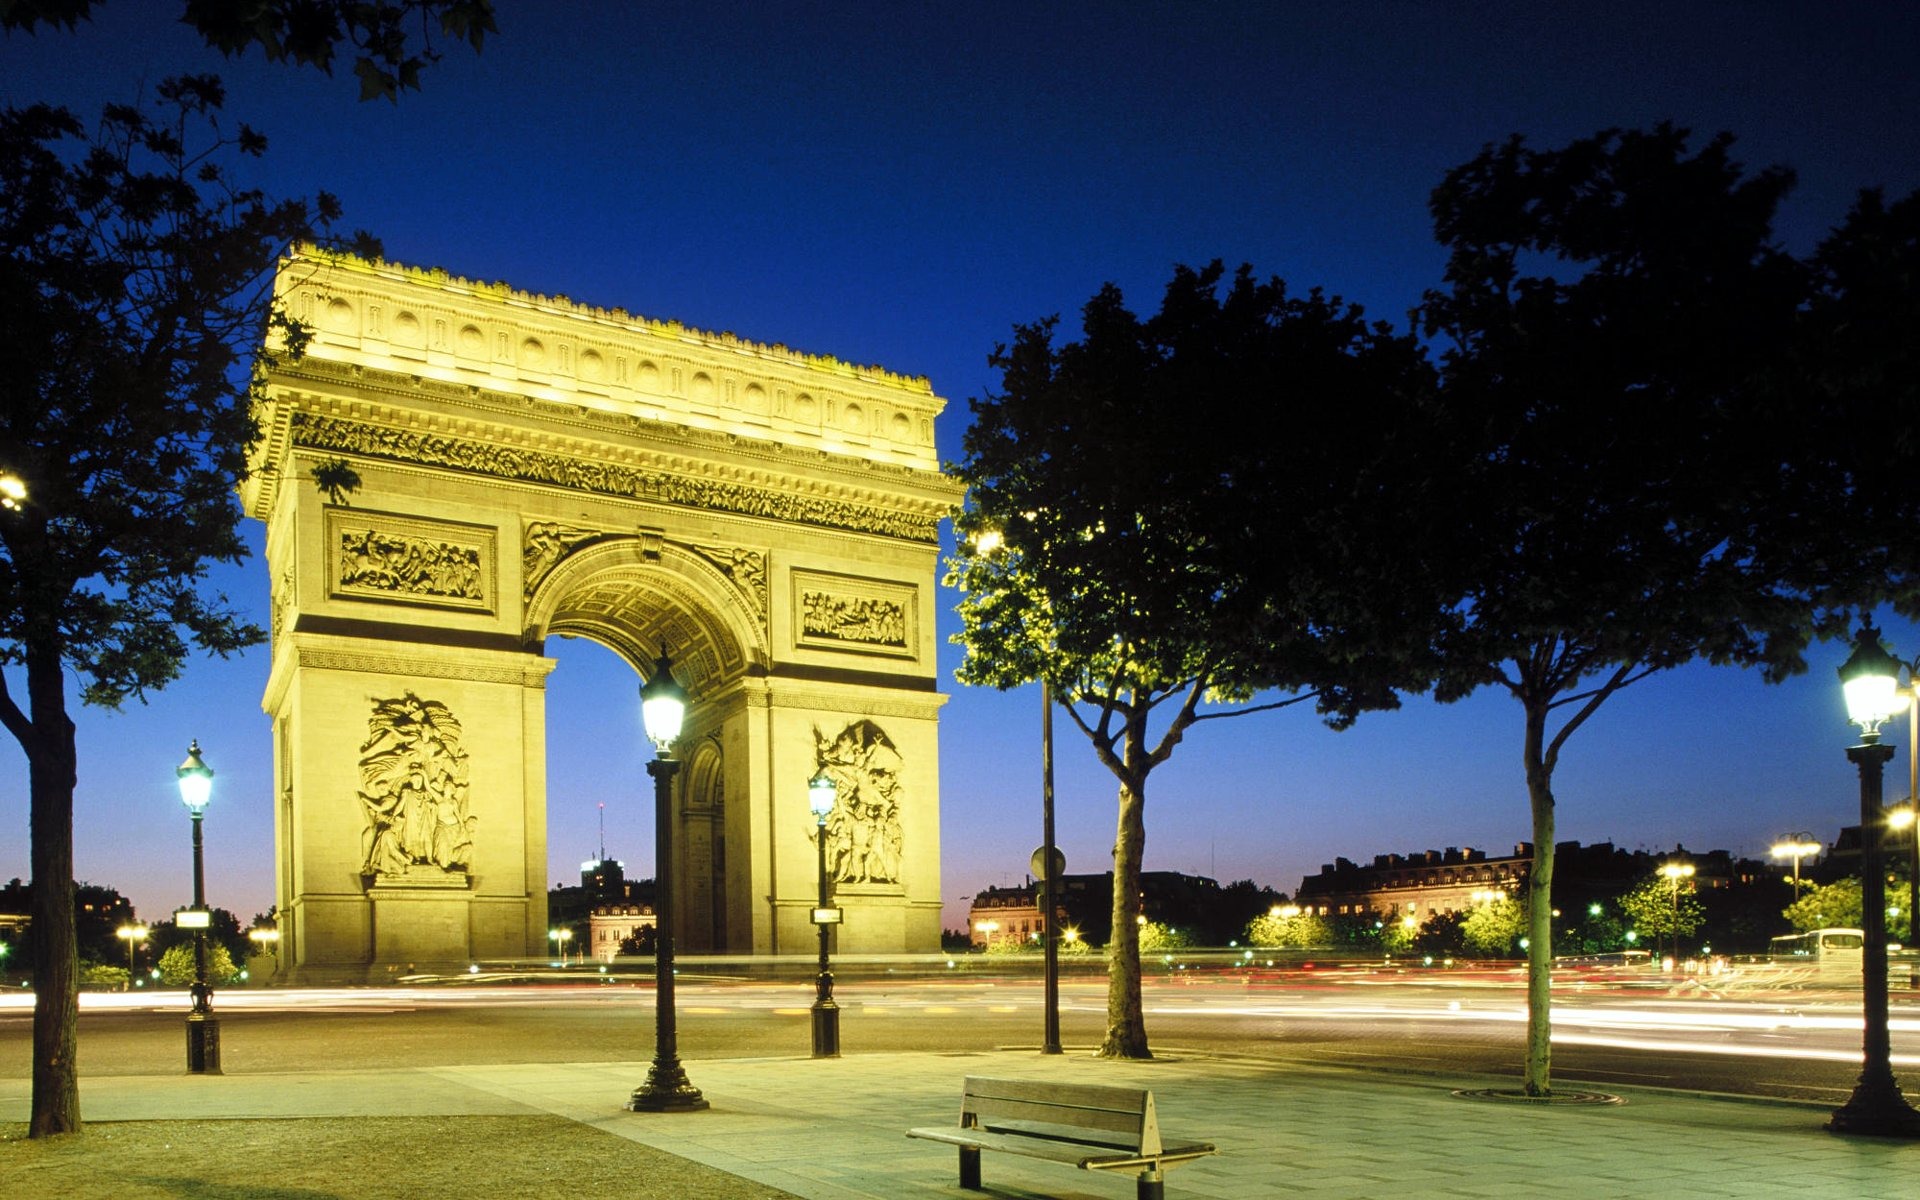 France-Arc de Triomphe at night wallpaper - 1920x1200 wallpaper ...